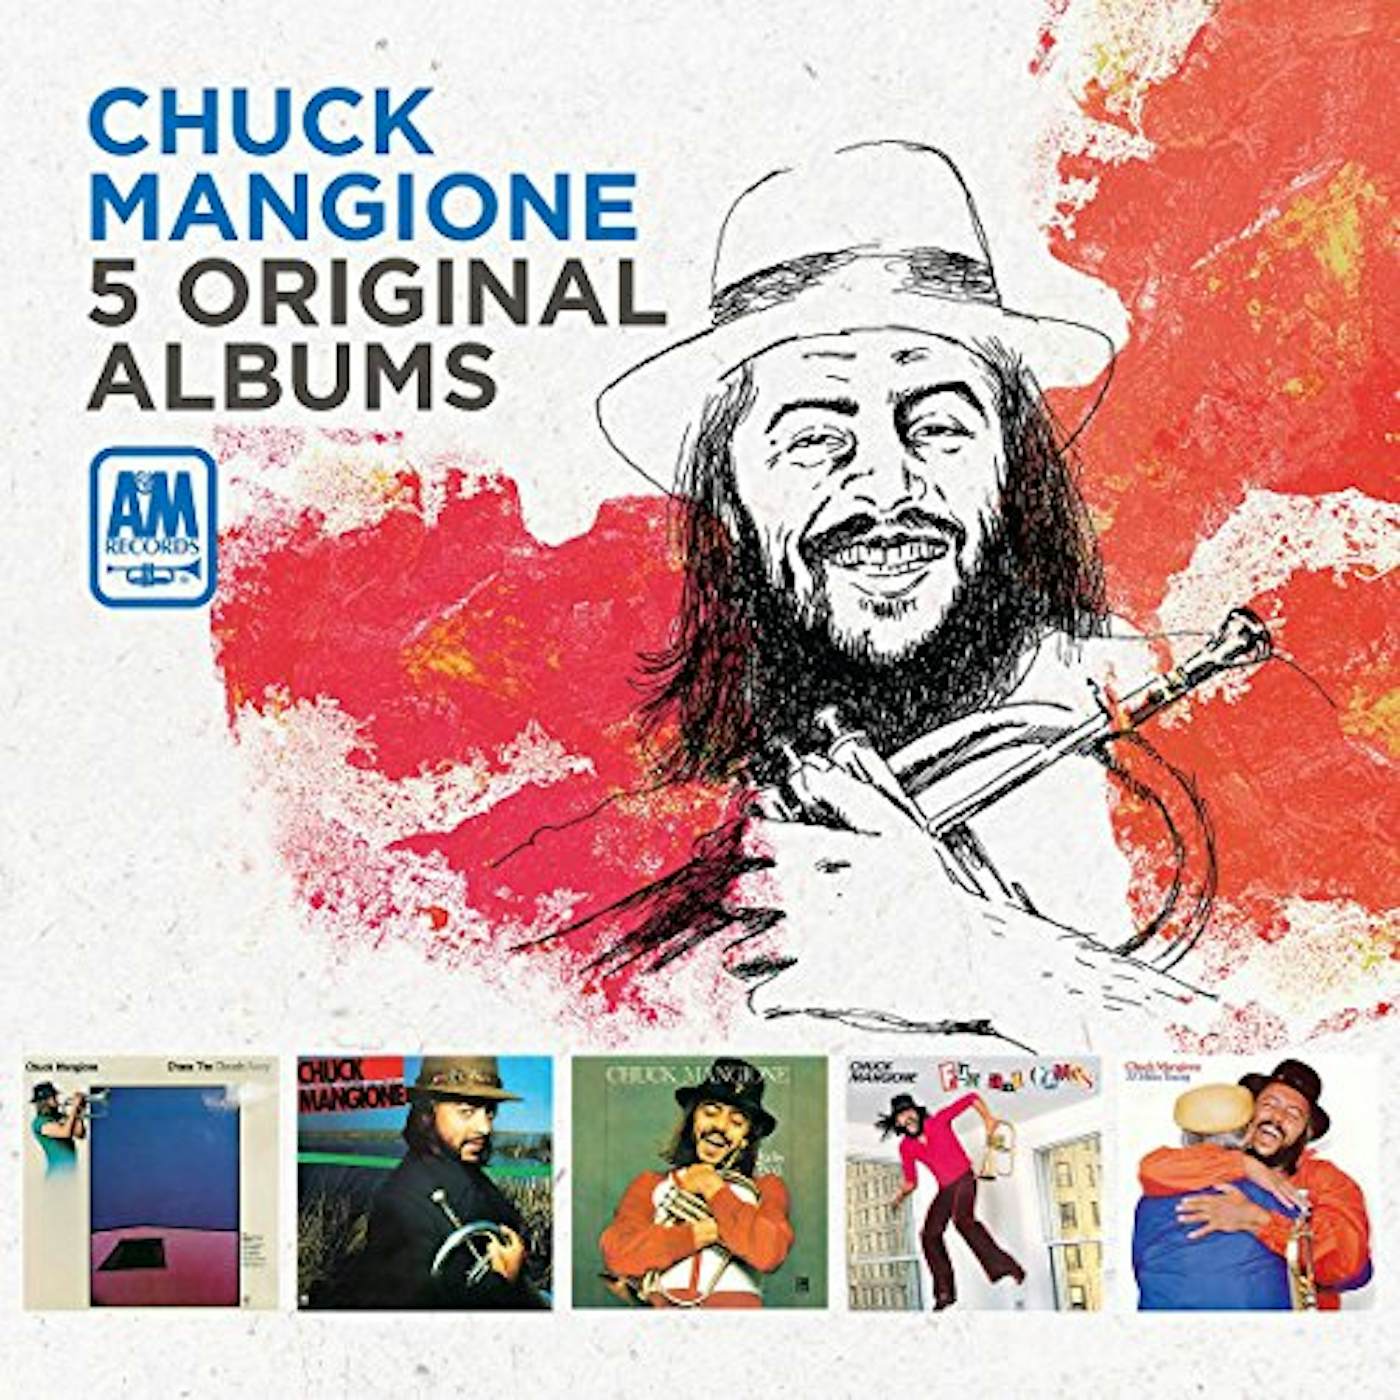 Chuck Mangione 5 ORIGINAL ALBUMS CD